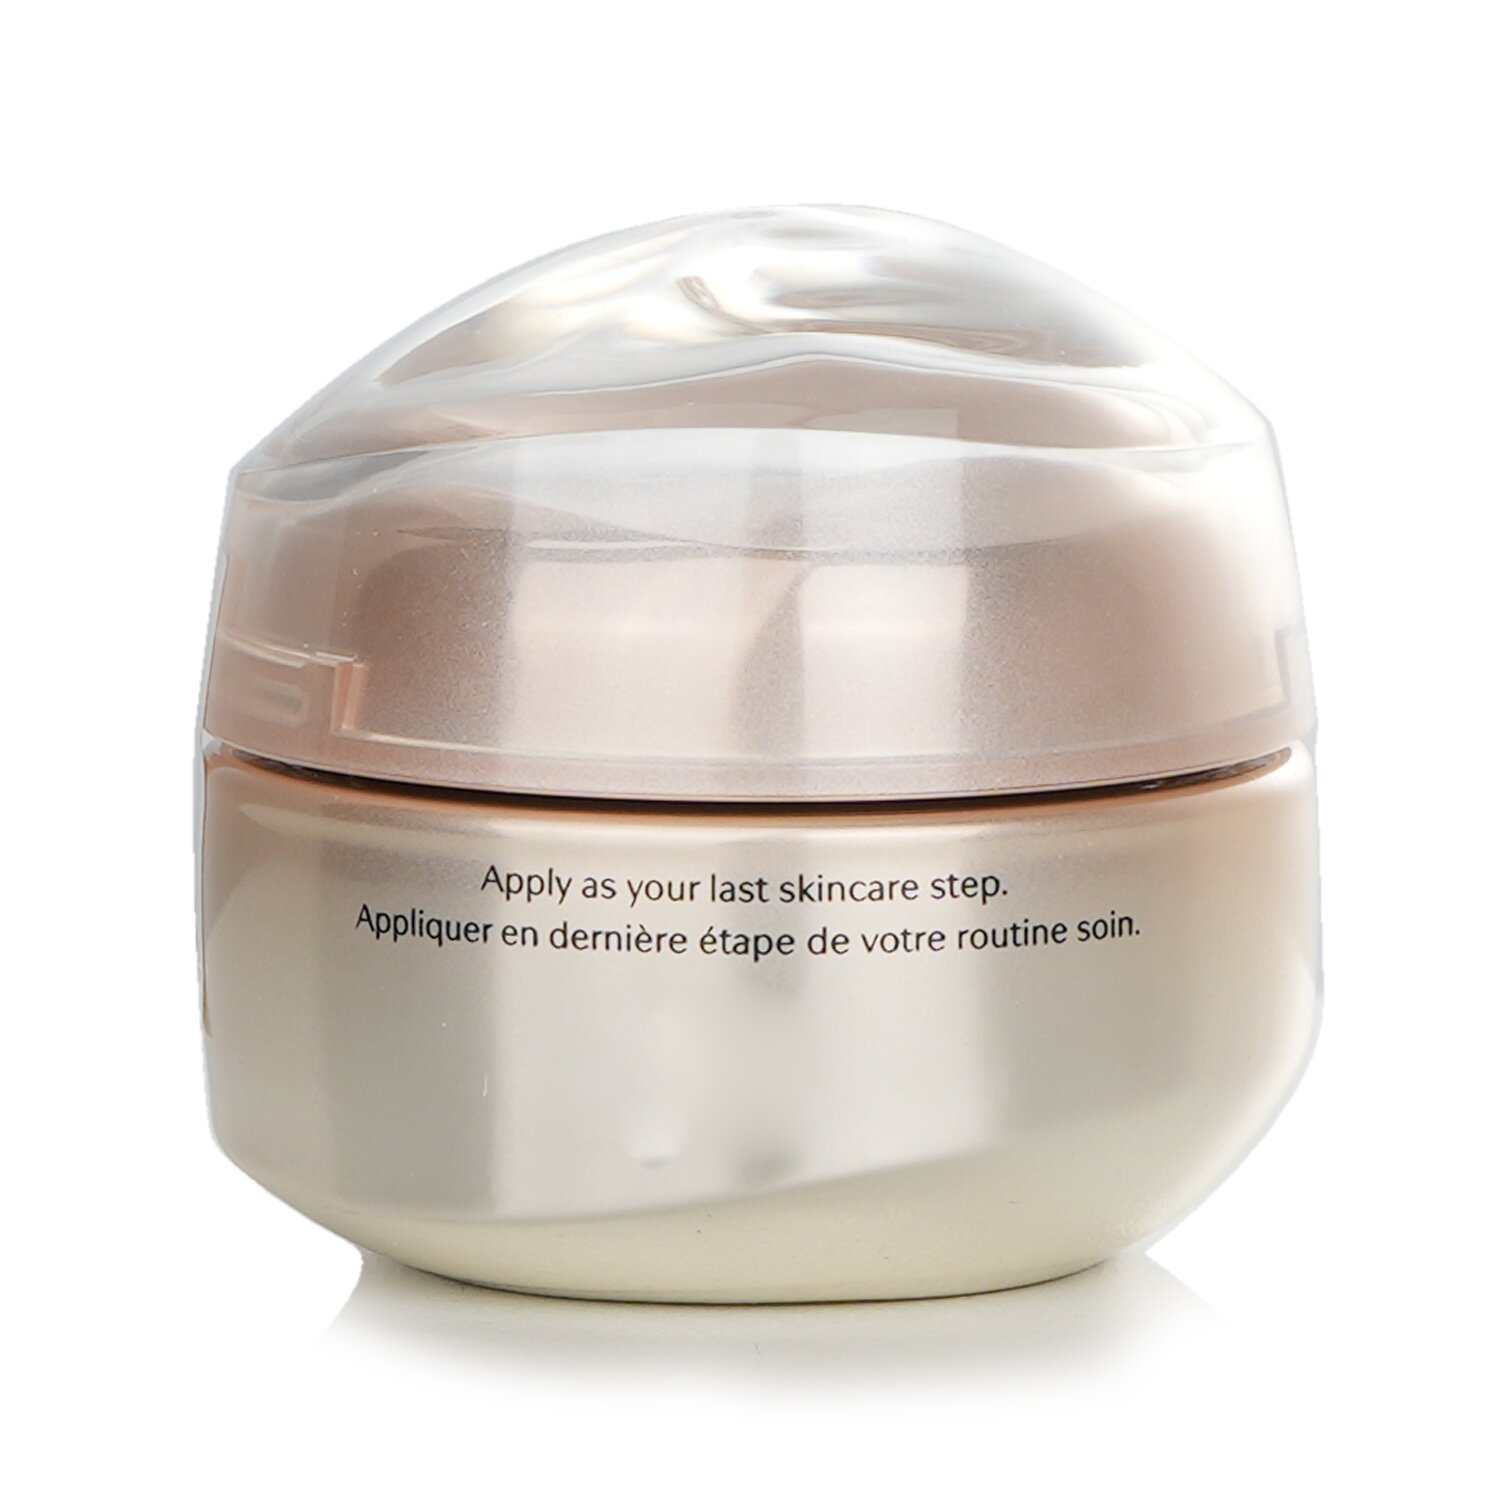 Shiseido Benefiance Wrinkle Smoothing Eye Cream 15ml/0.51oz